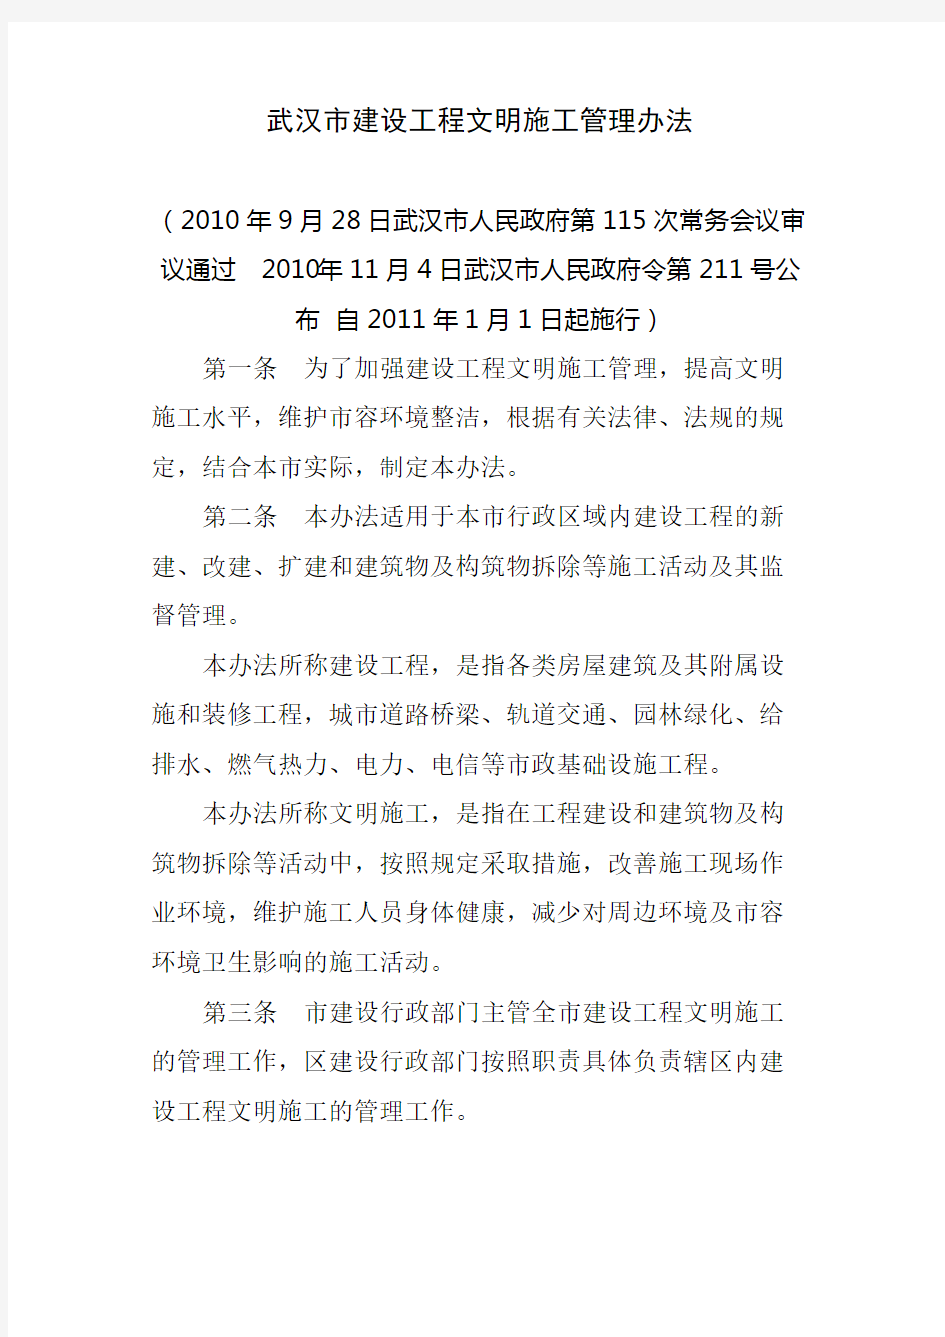 武汉市建设工程文明施工管理规定武汉市人民政府令第